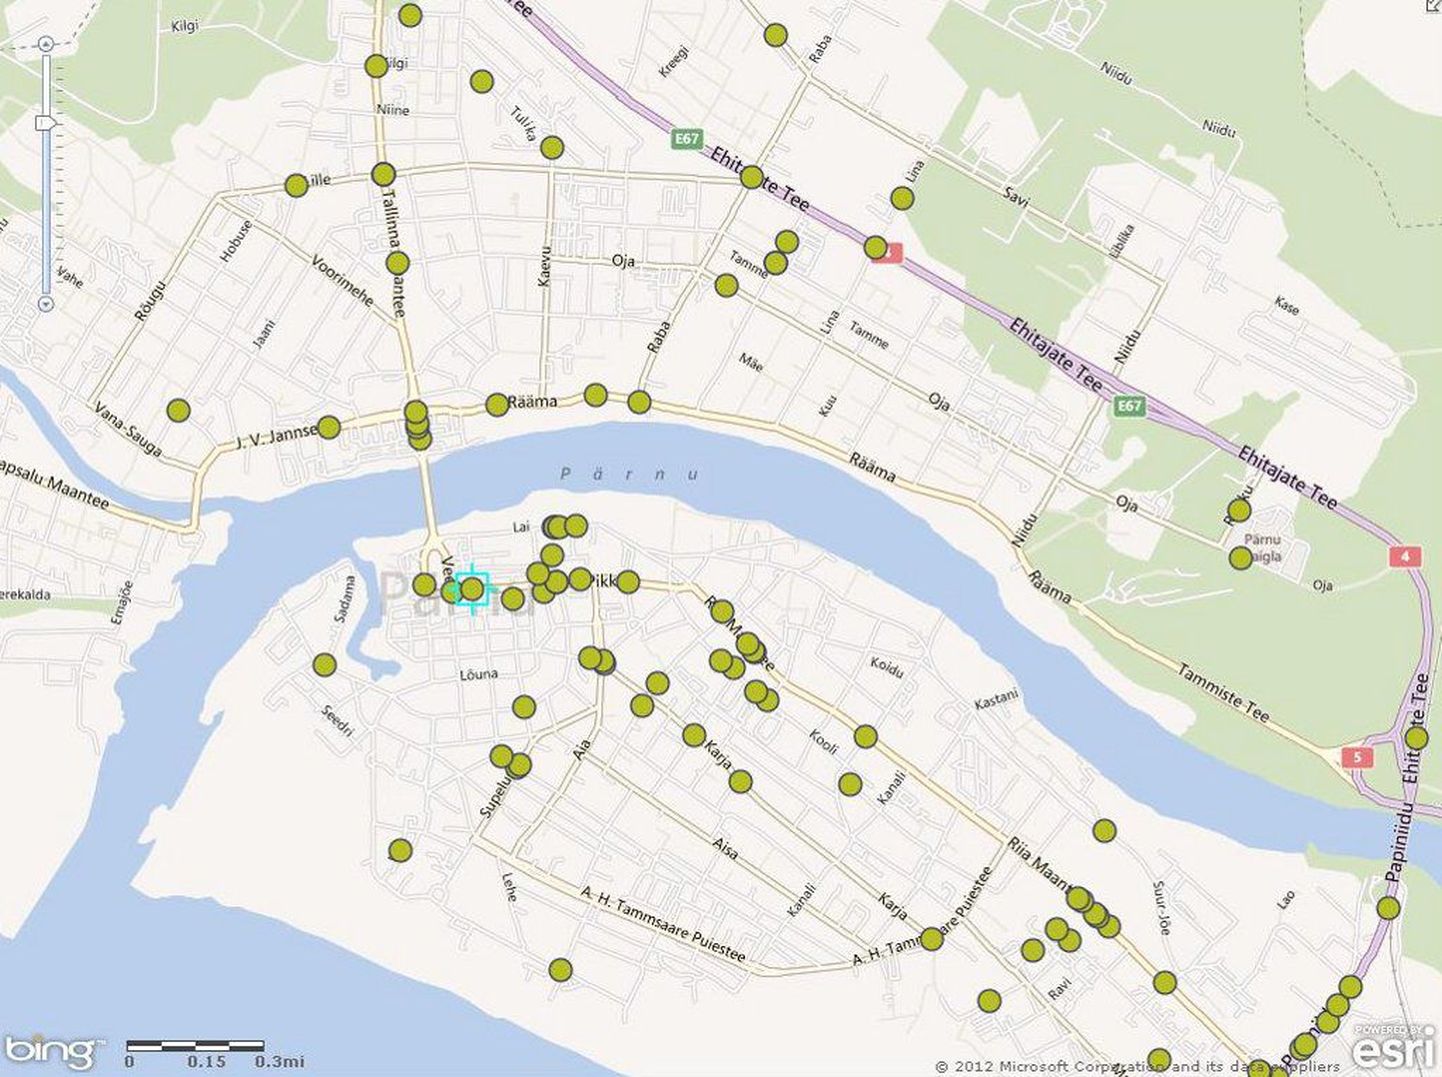 Fragment liiklusõnnetuste kaardirakenduse veebilehelt. Kaardil on märgitud kohad, kus Pärnus eelmisel aastal liiklusõnnetused juhtusid.